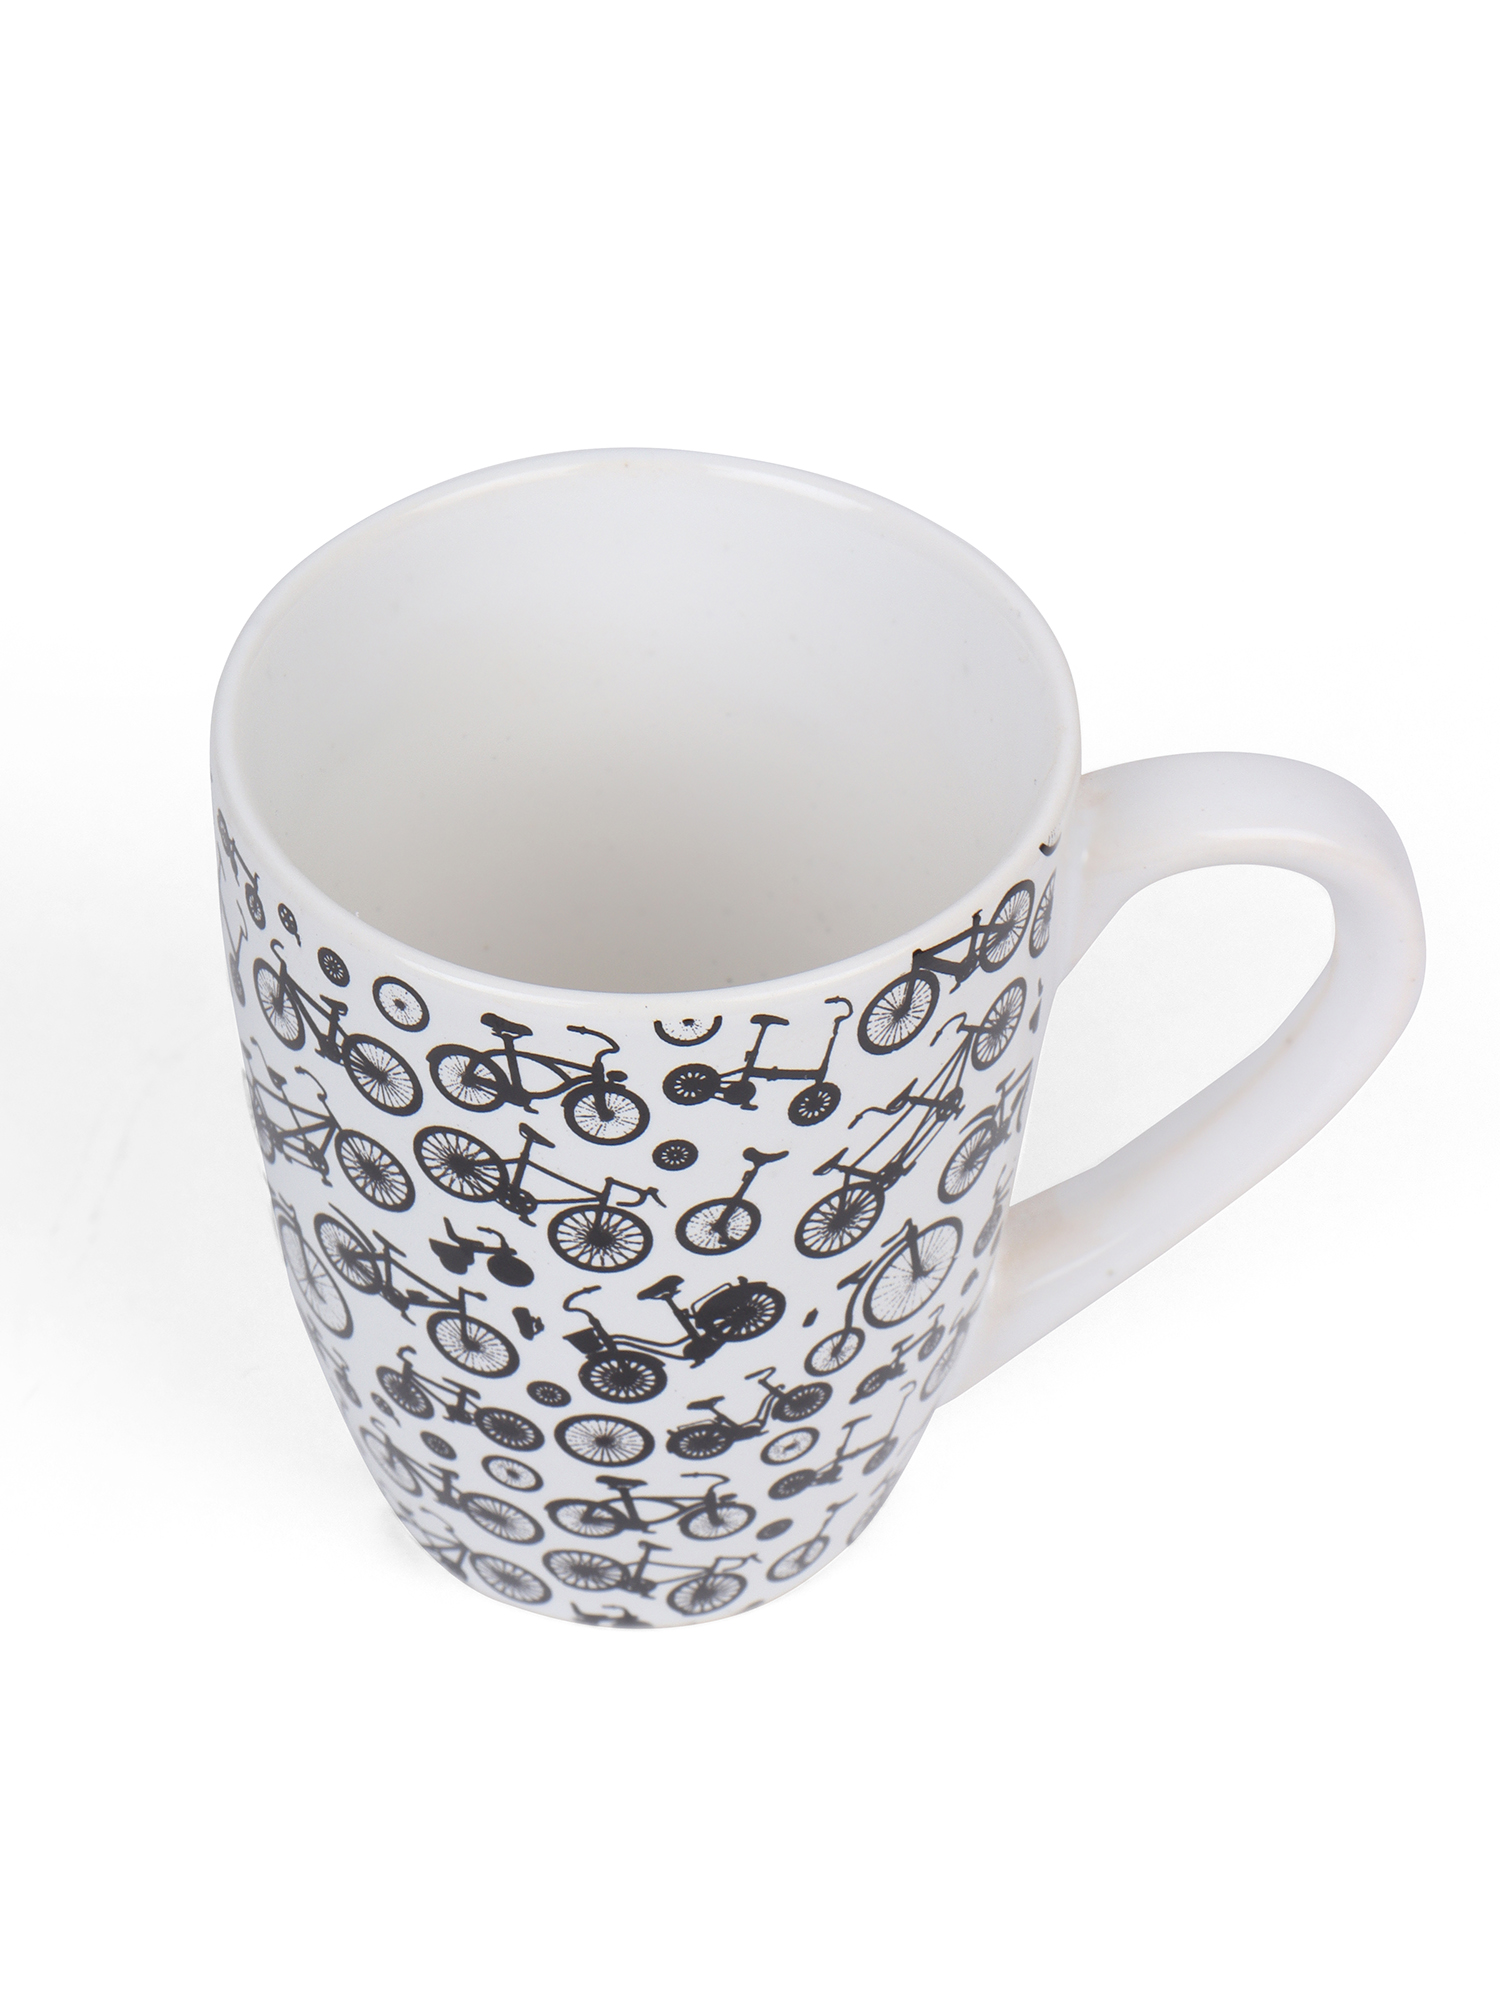 LOVE AOP Ceramic Coffee Mug, on Spoke Herd